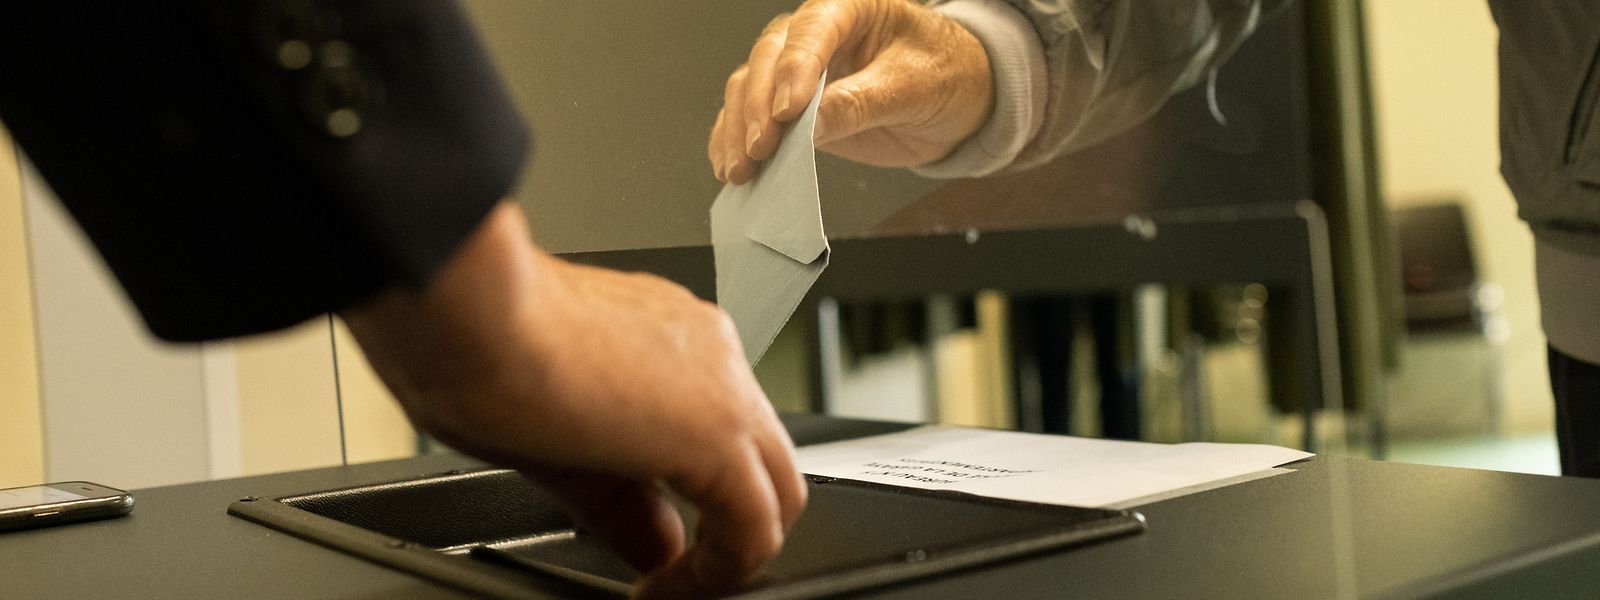 Pour voter, il faut s'inscrire au préalable sur la liste électorale consulaire. 